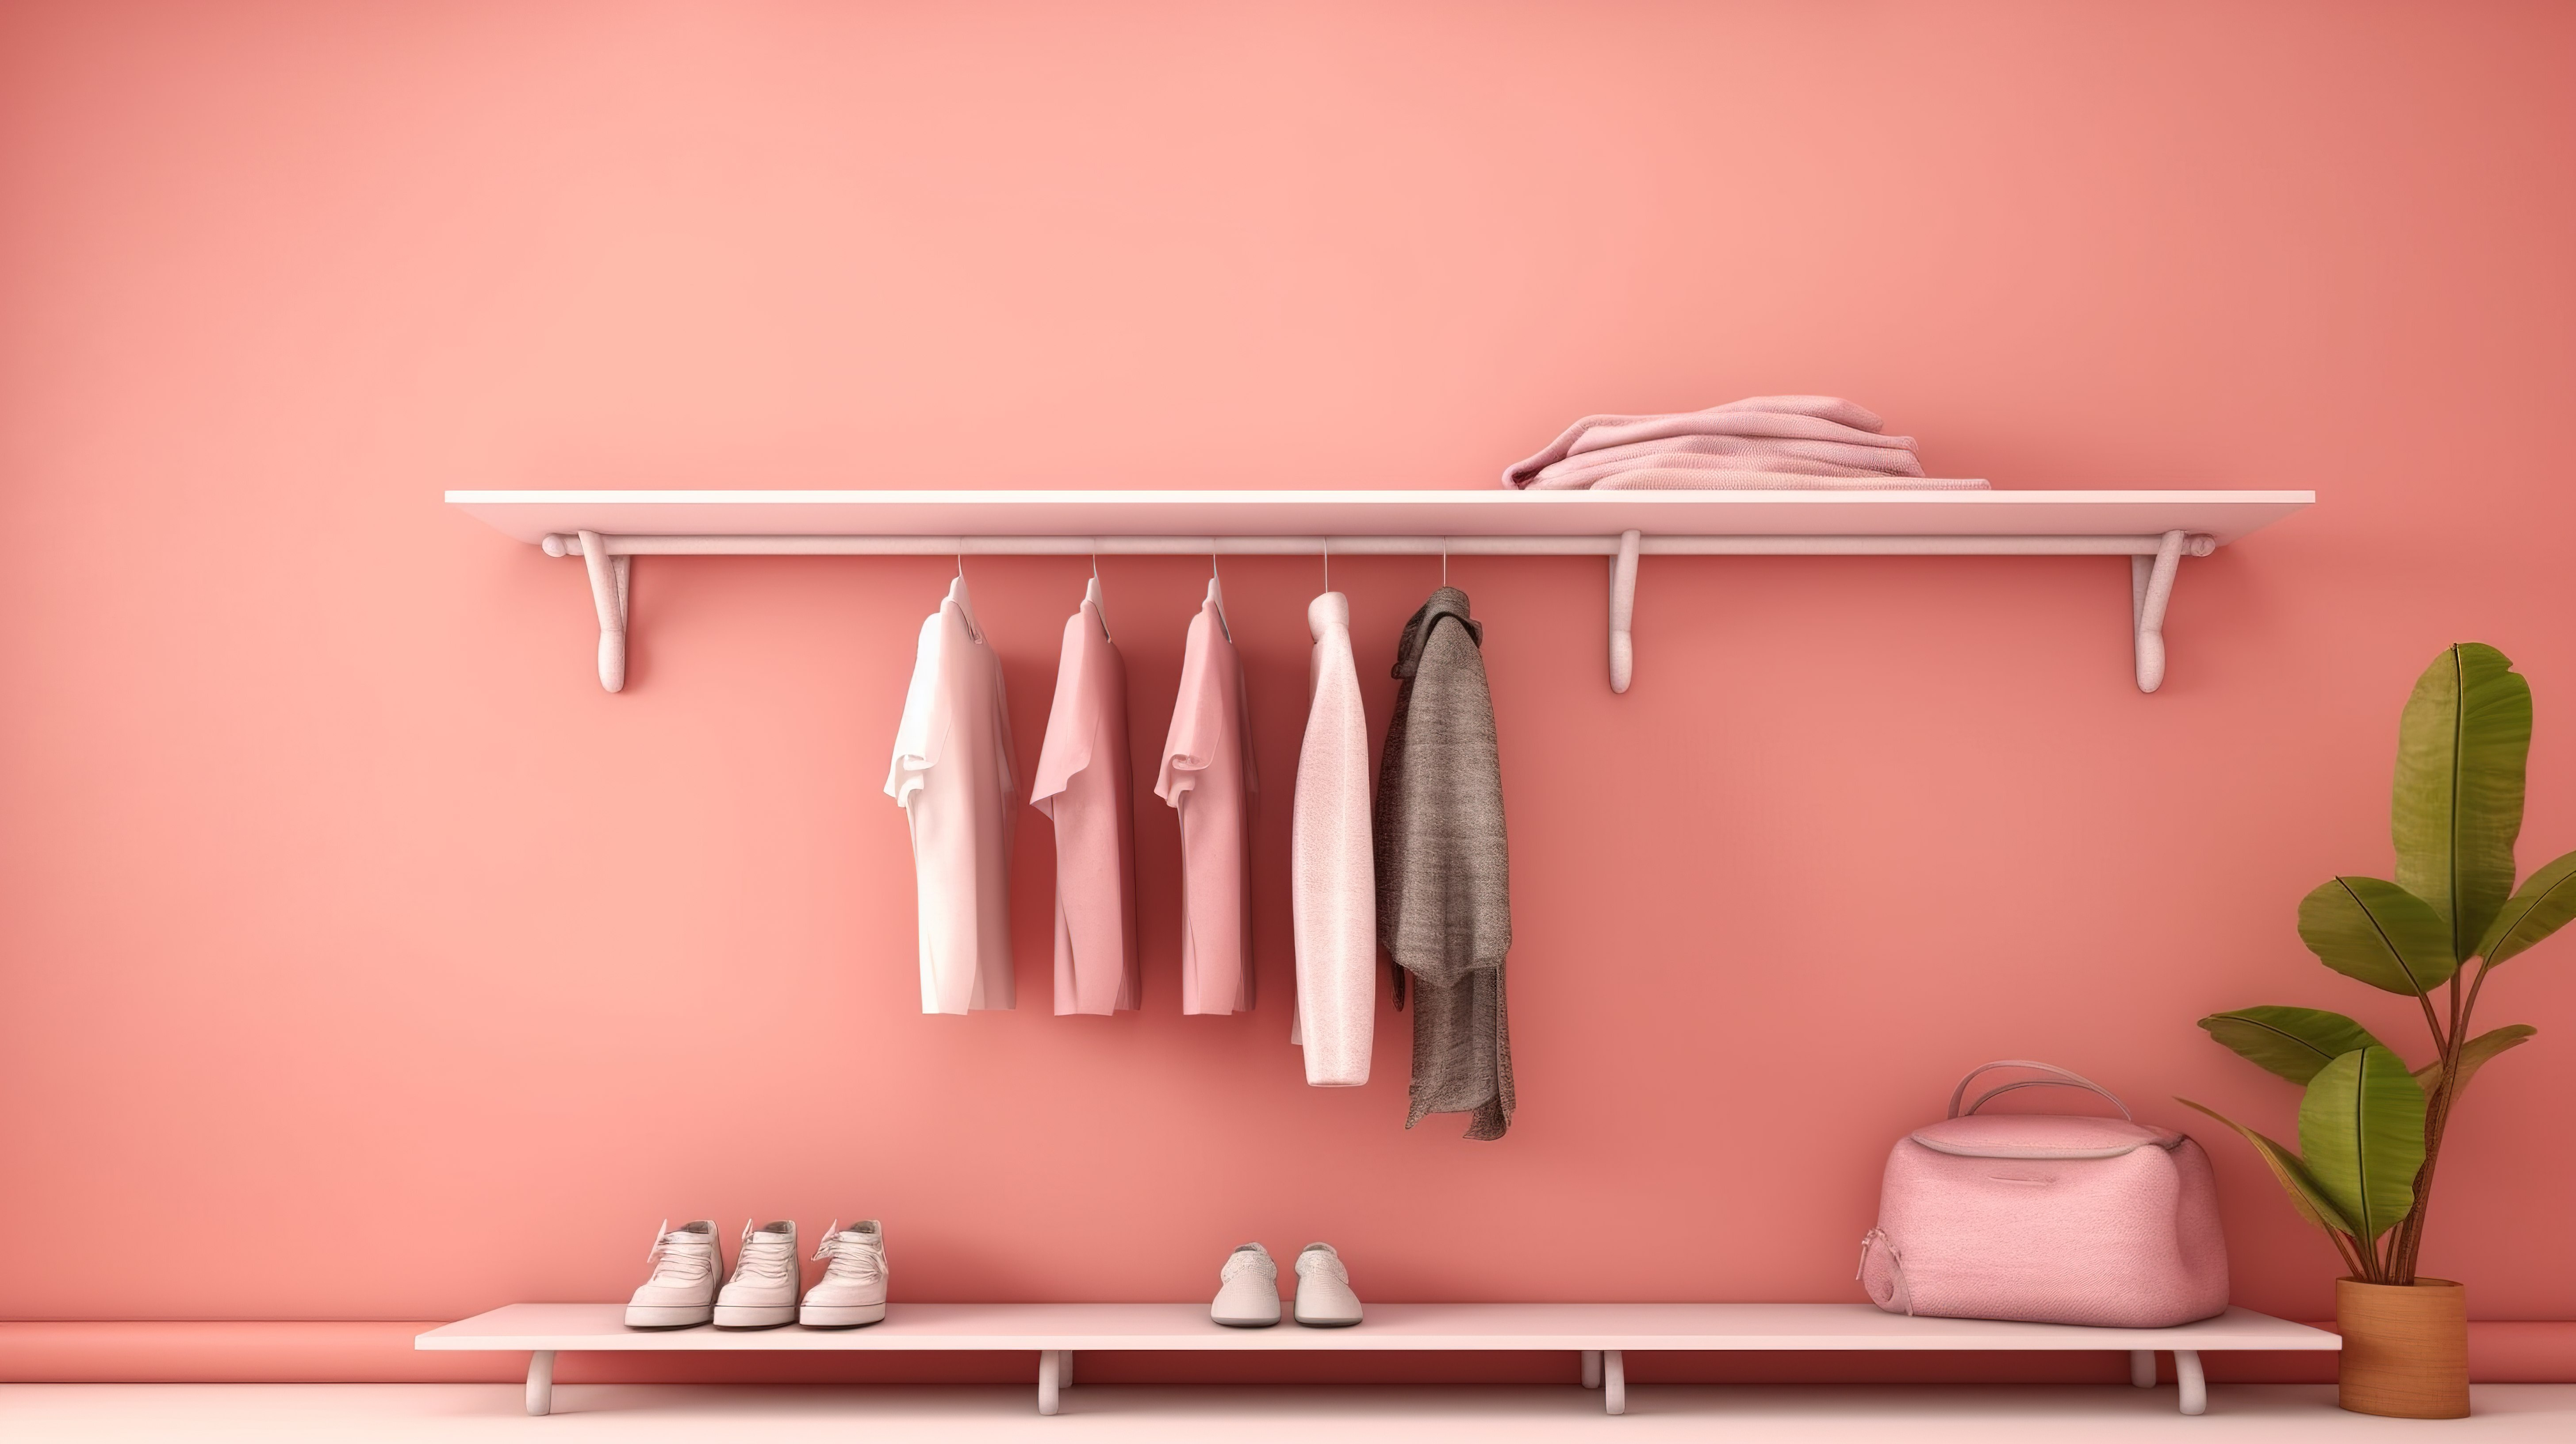 垃圾架子与衣服反对柔和的粉红色珊瑚背景 3d 渲染图片